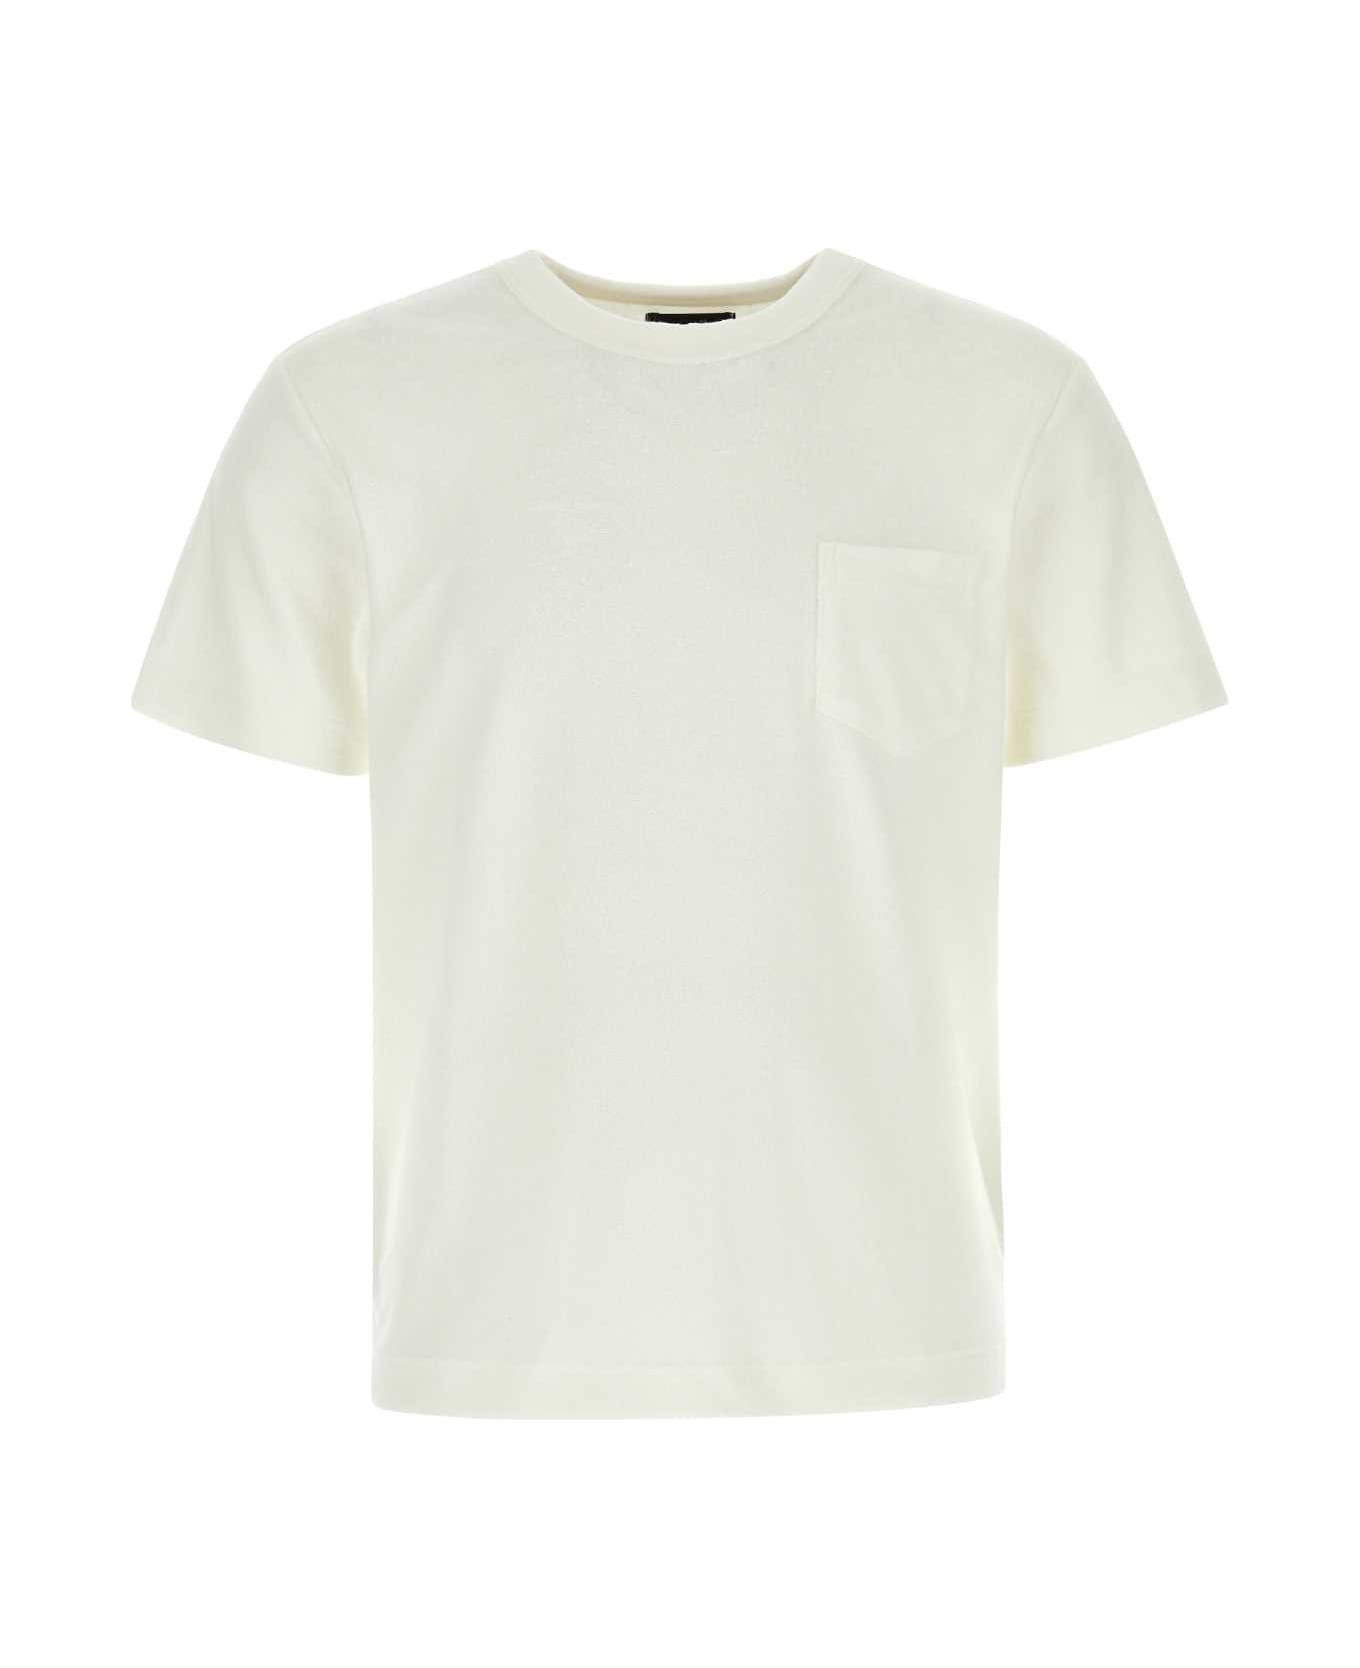 Howlin White Terry Fons T-shirt - ECRU シャツ